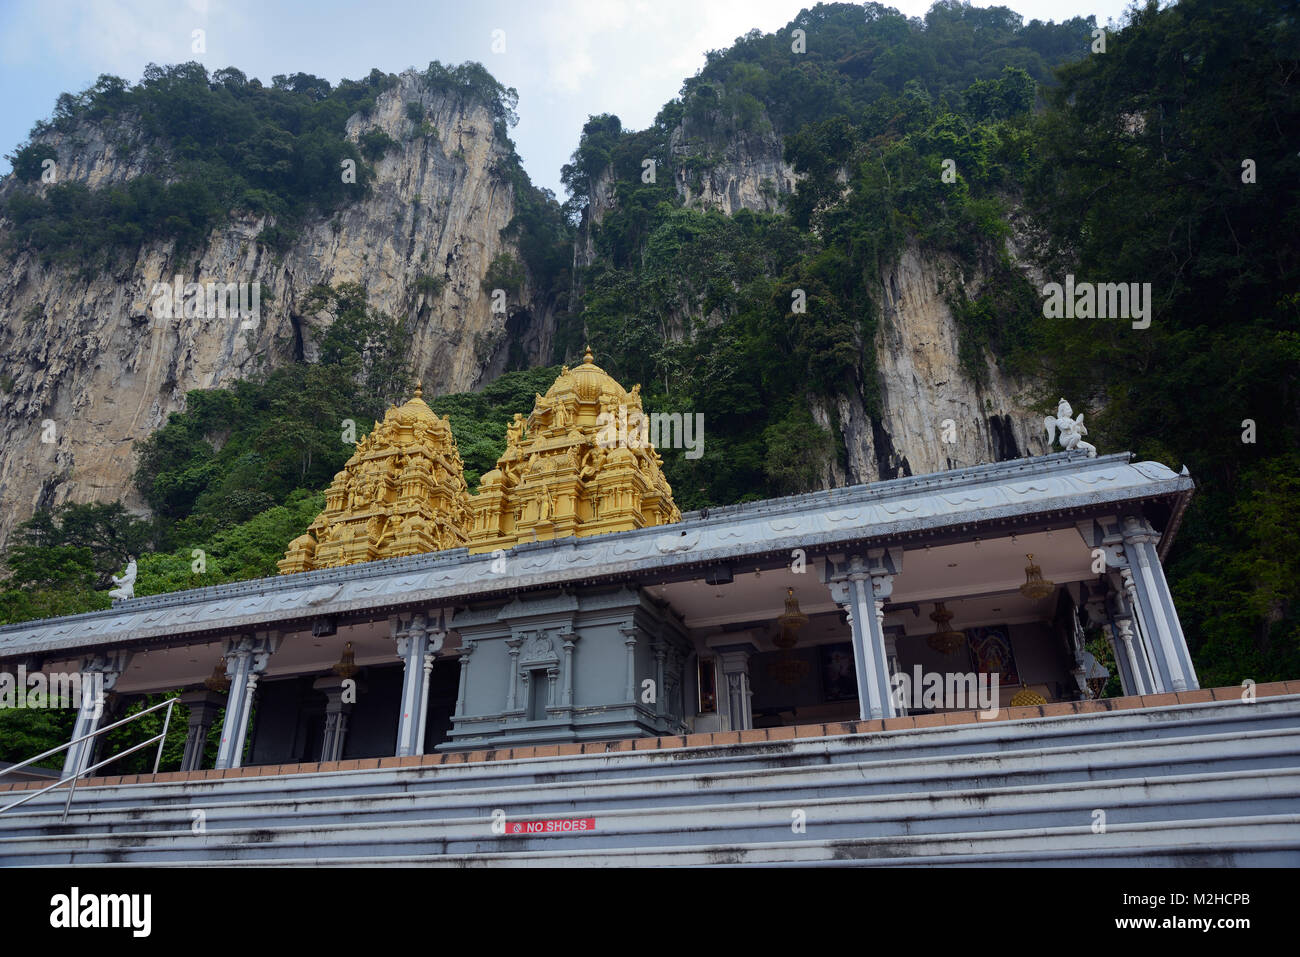 Kuala Lumpur, Malaisie - le 3 novembre 2014 : l'un des temples hindous dans le territoire de Batu Caves. Batu Caves - un complexe de collines et de grottes shr hindou Banque D'Images